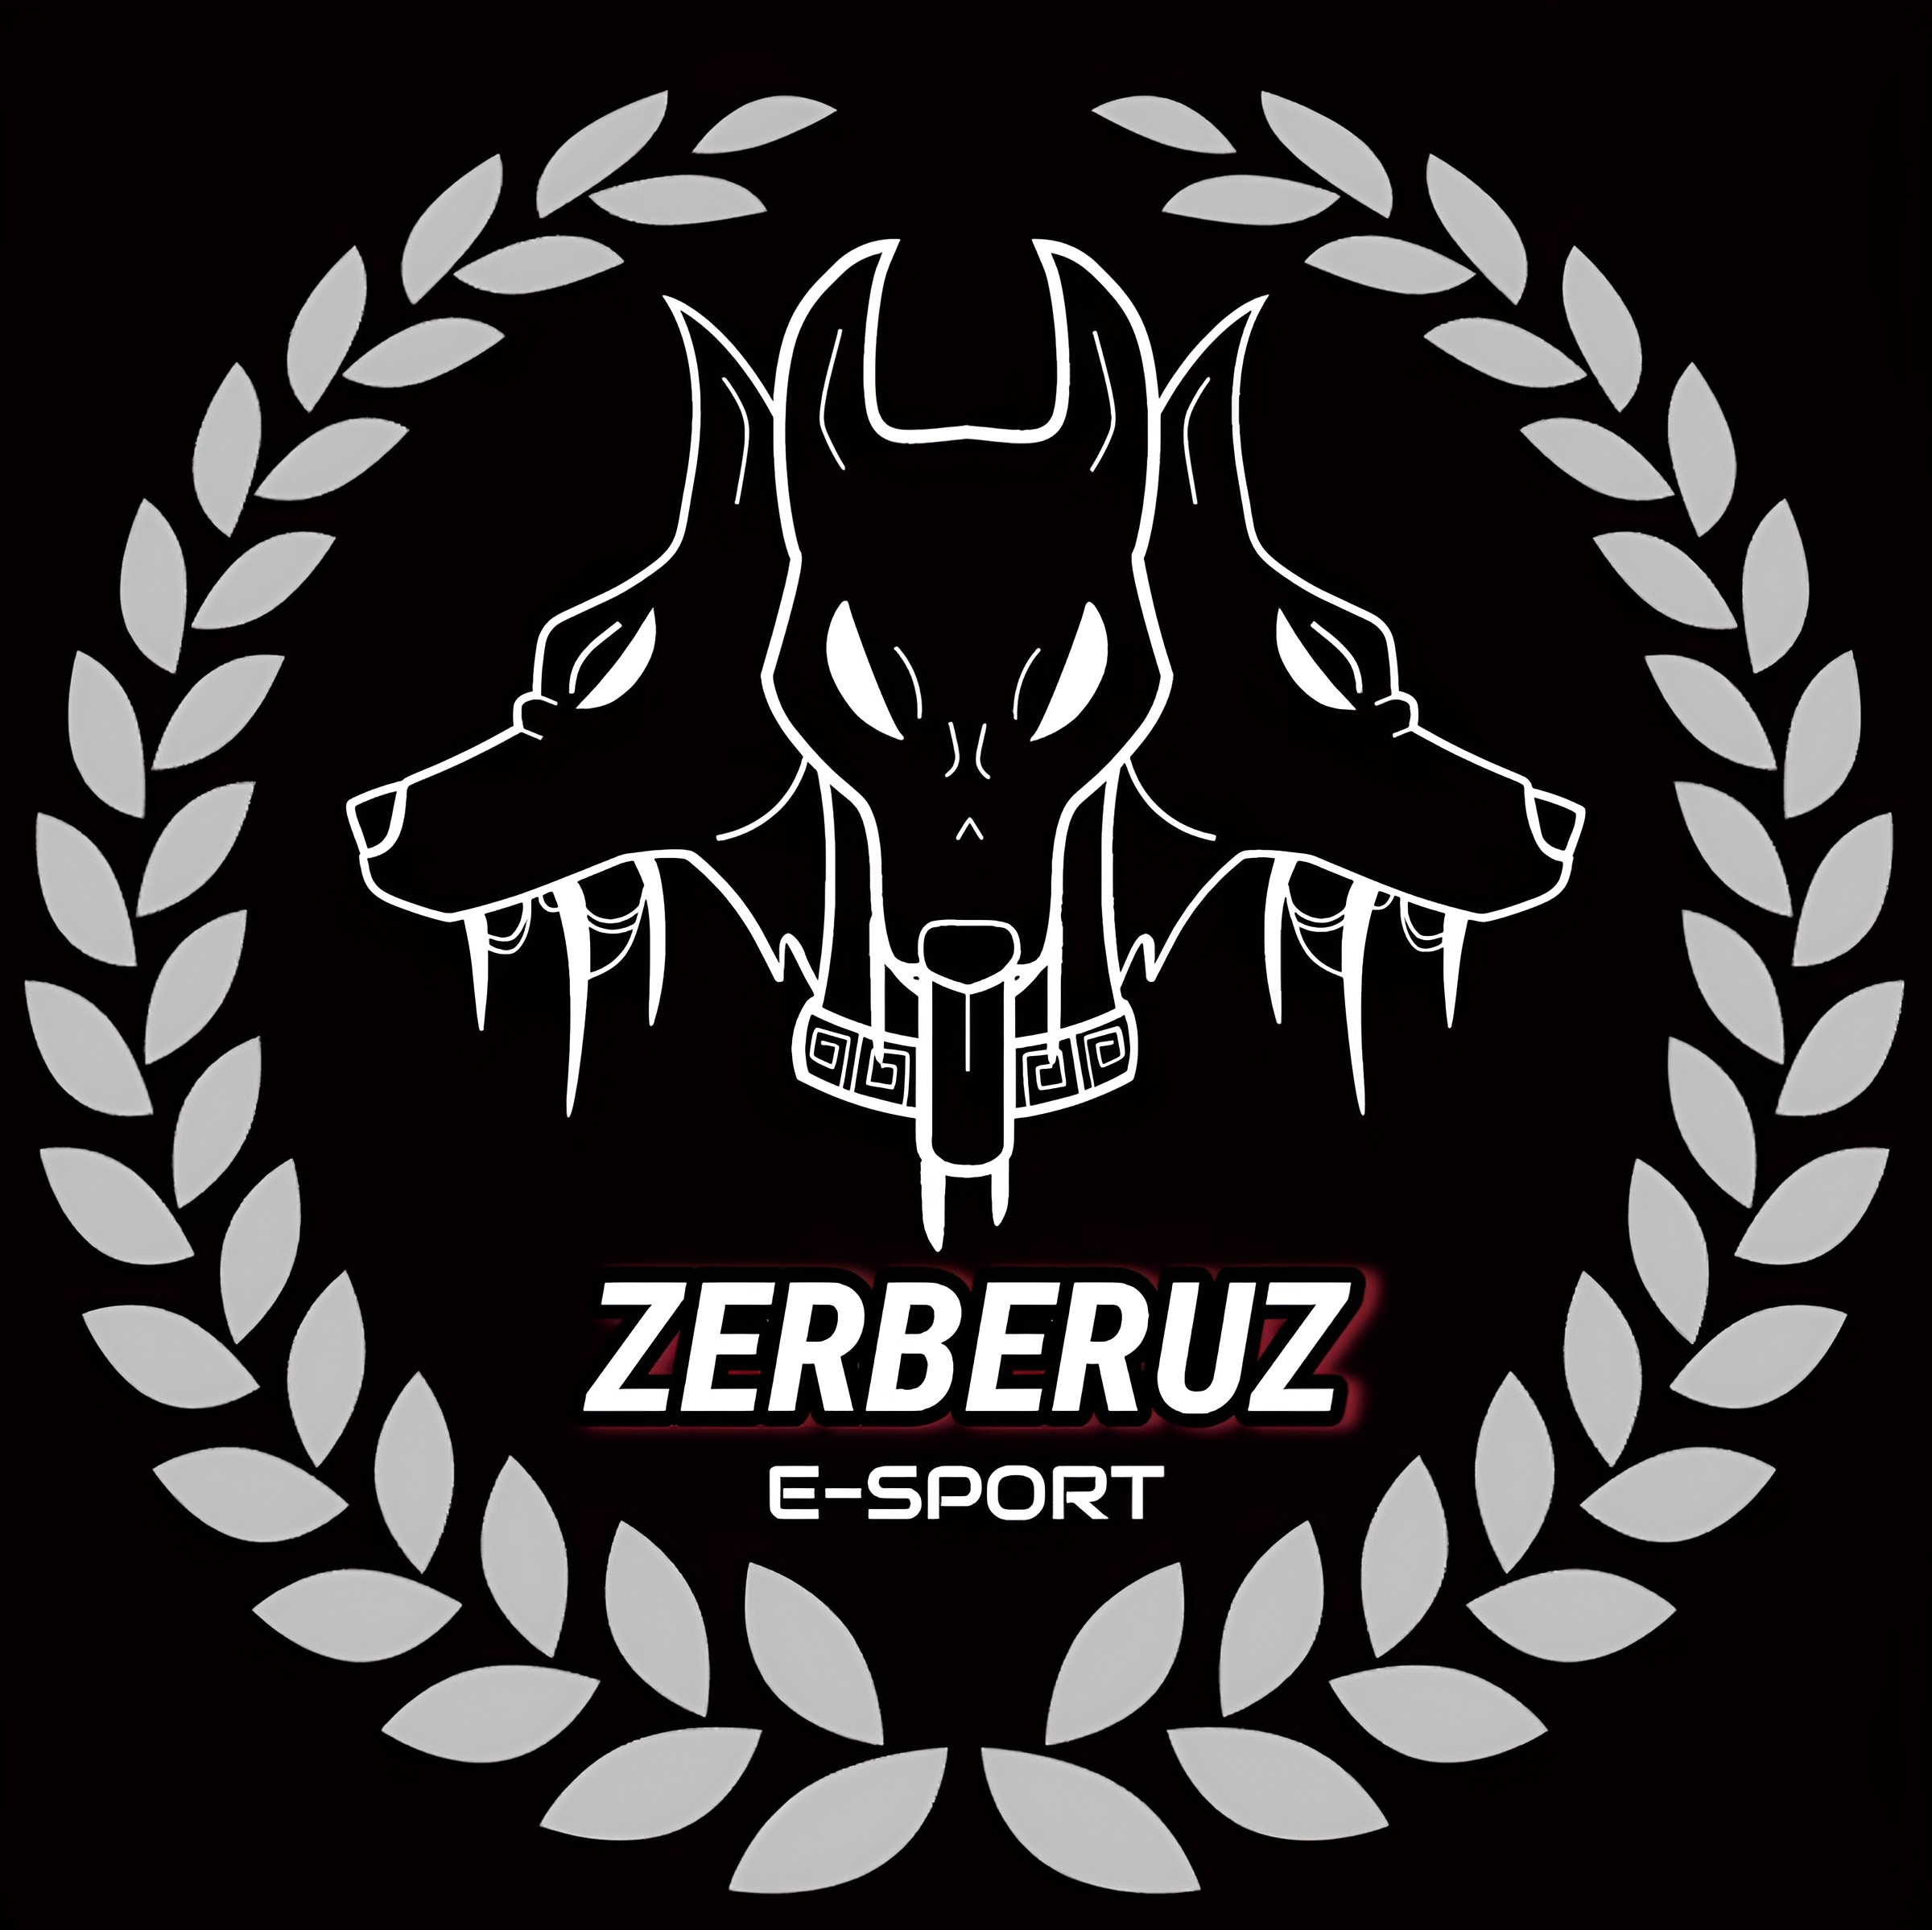 Zerberuz E-Sport